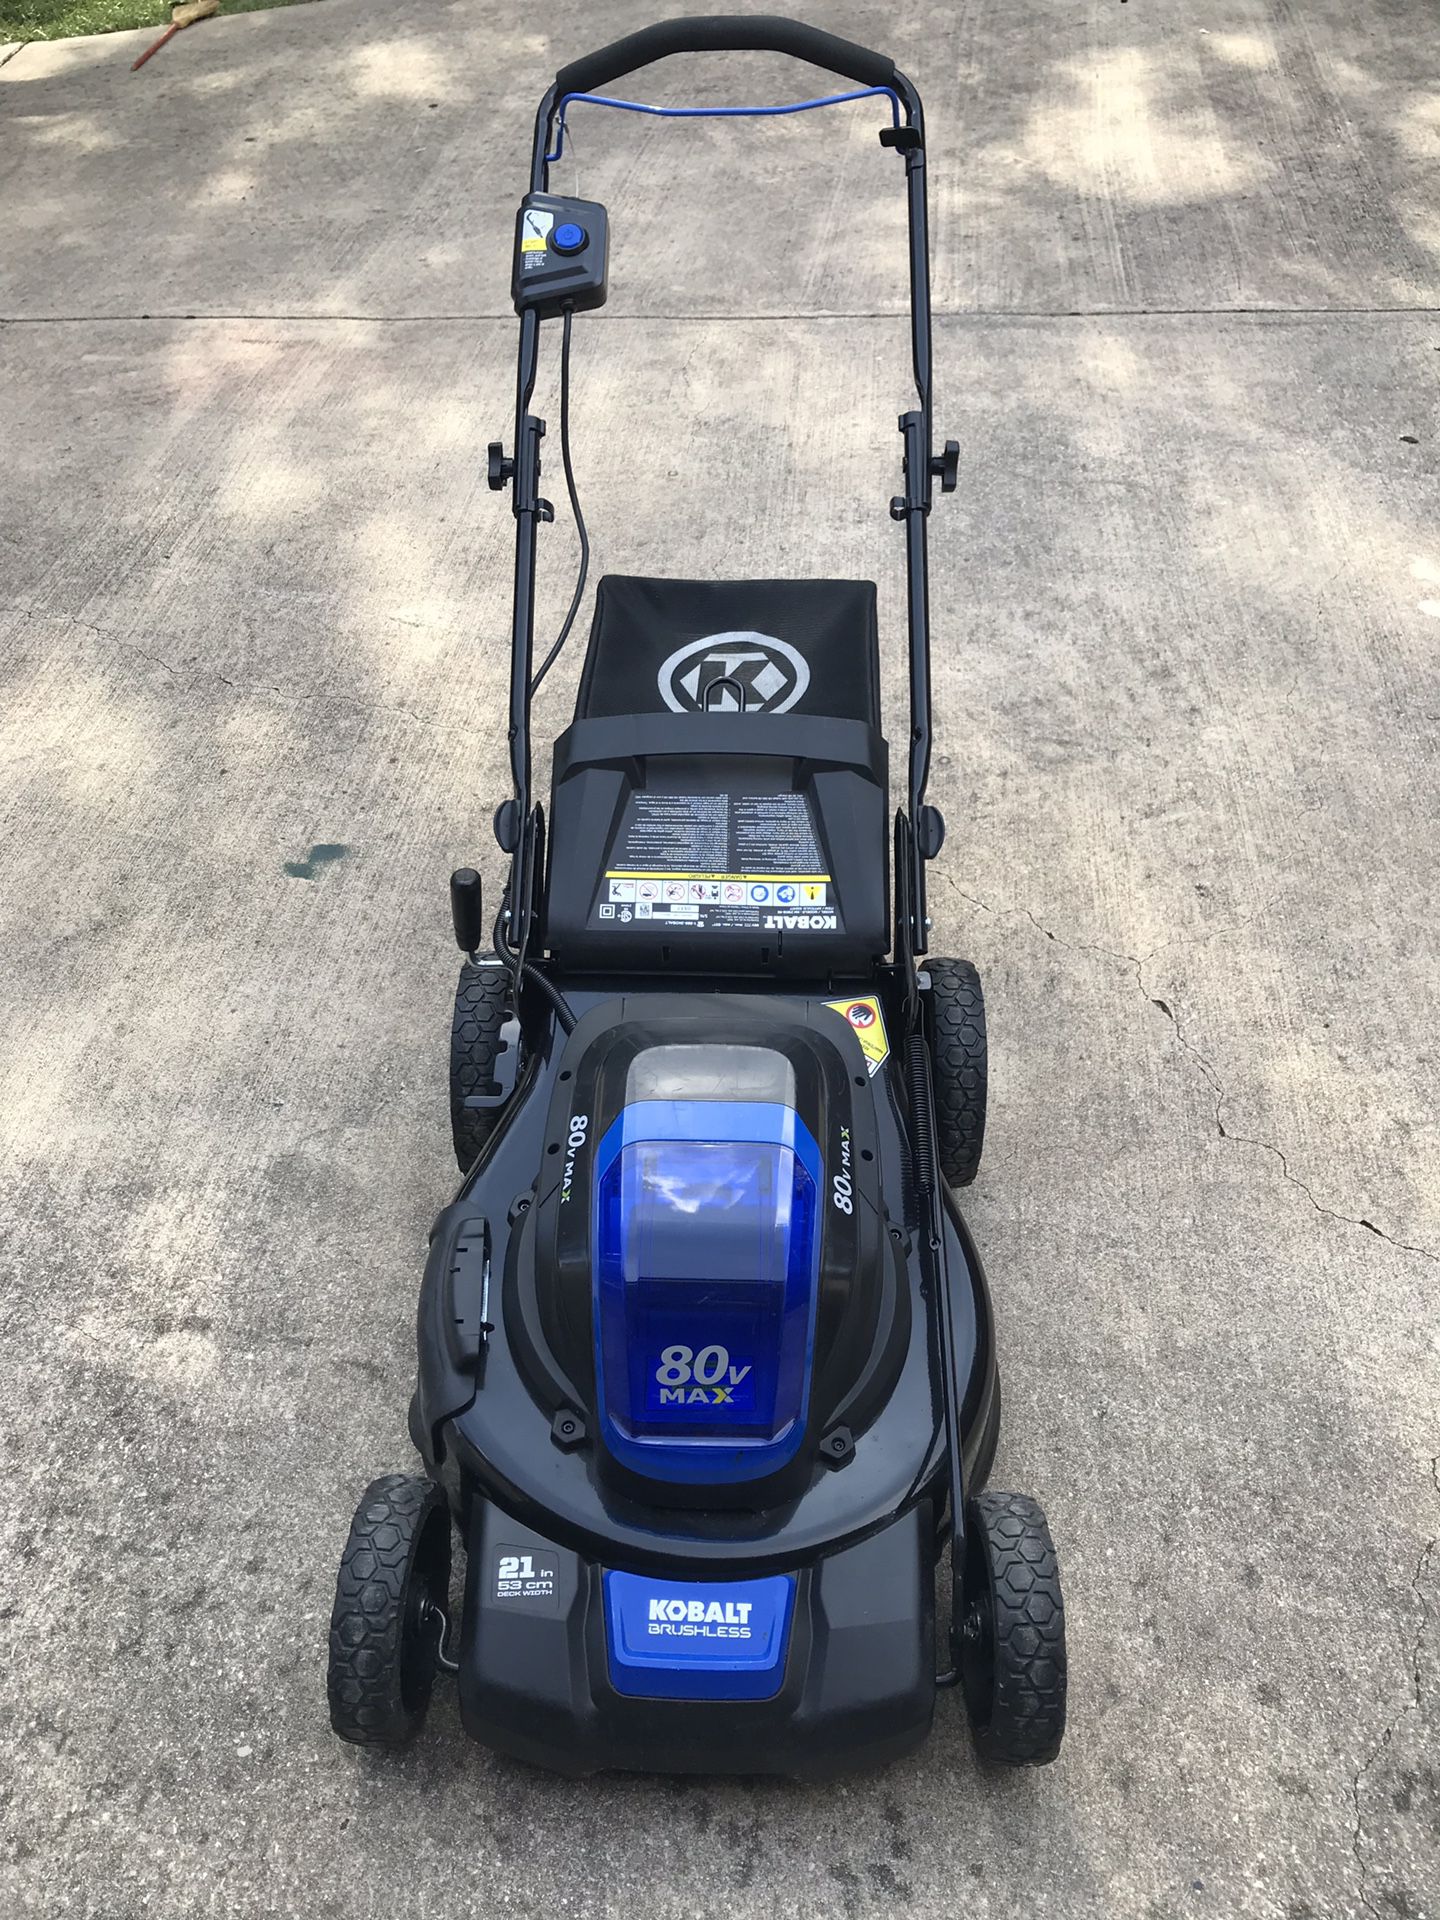 Kobalt 80v max lawn mower